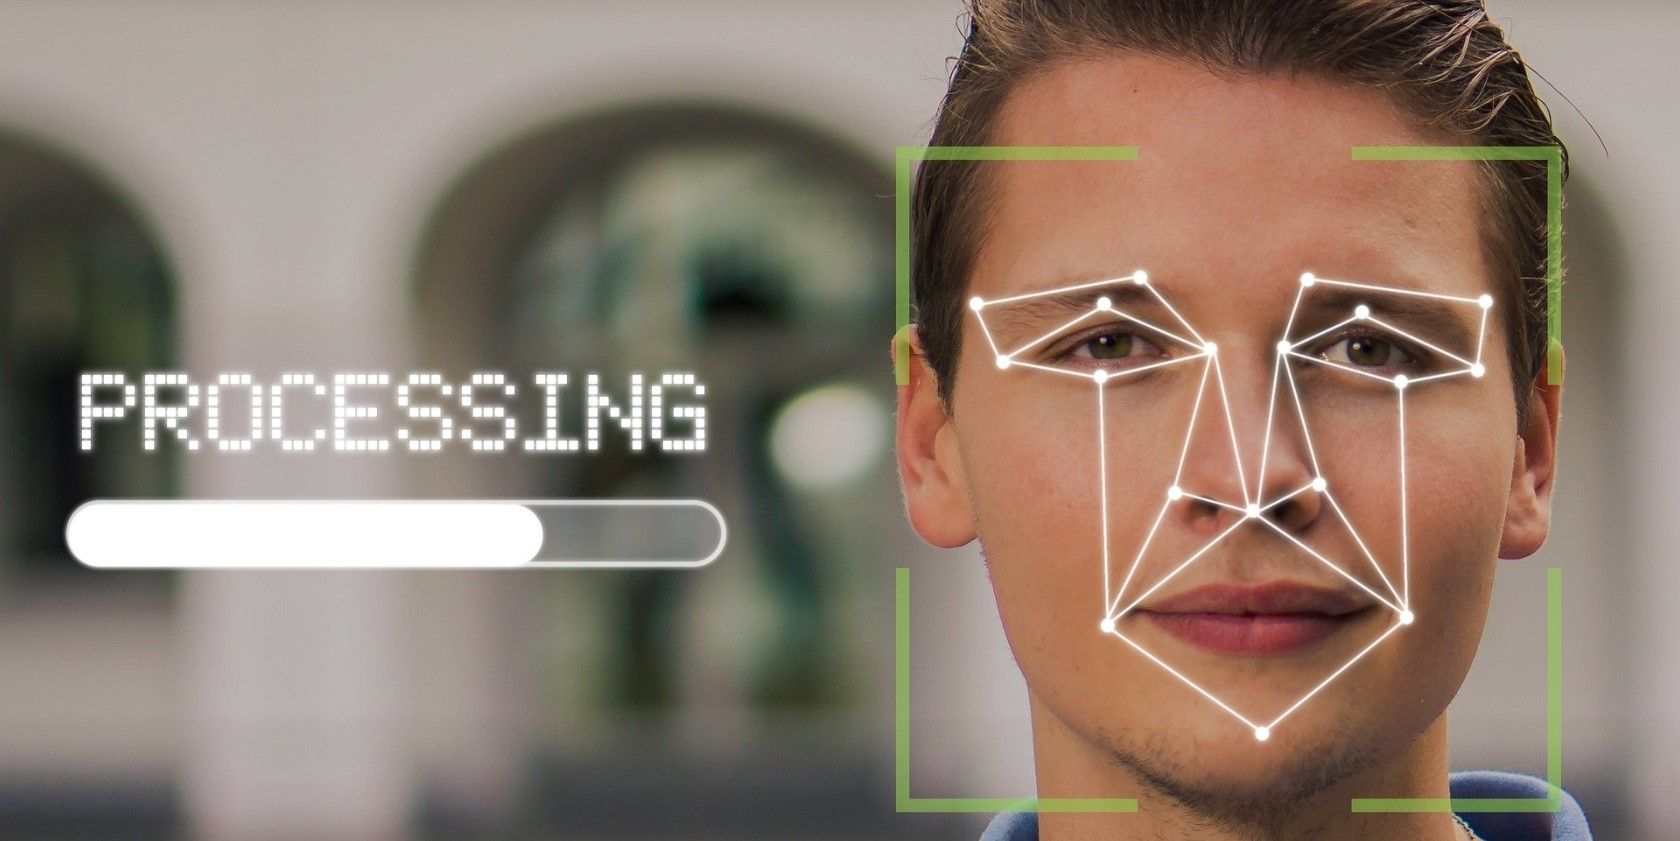 پردازش تشخیص چهره یک مرد توسط هوش مصنوعی